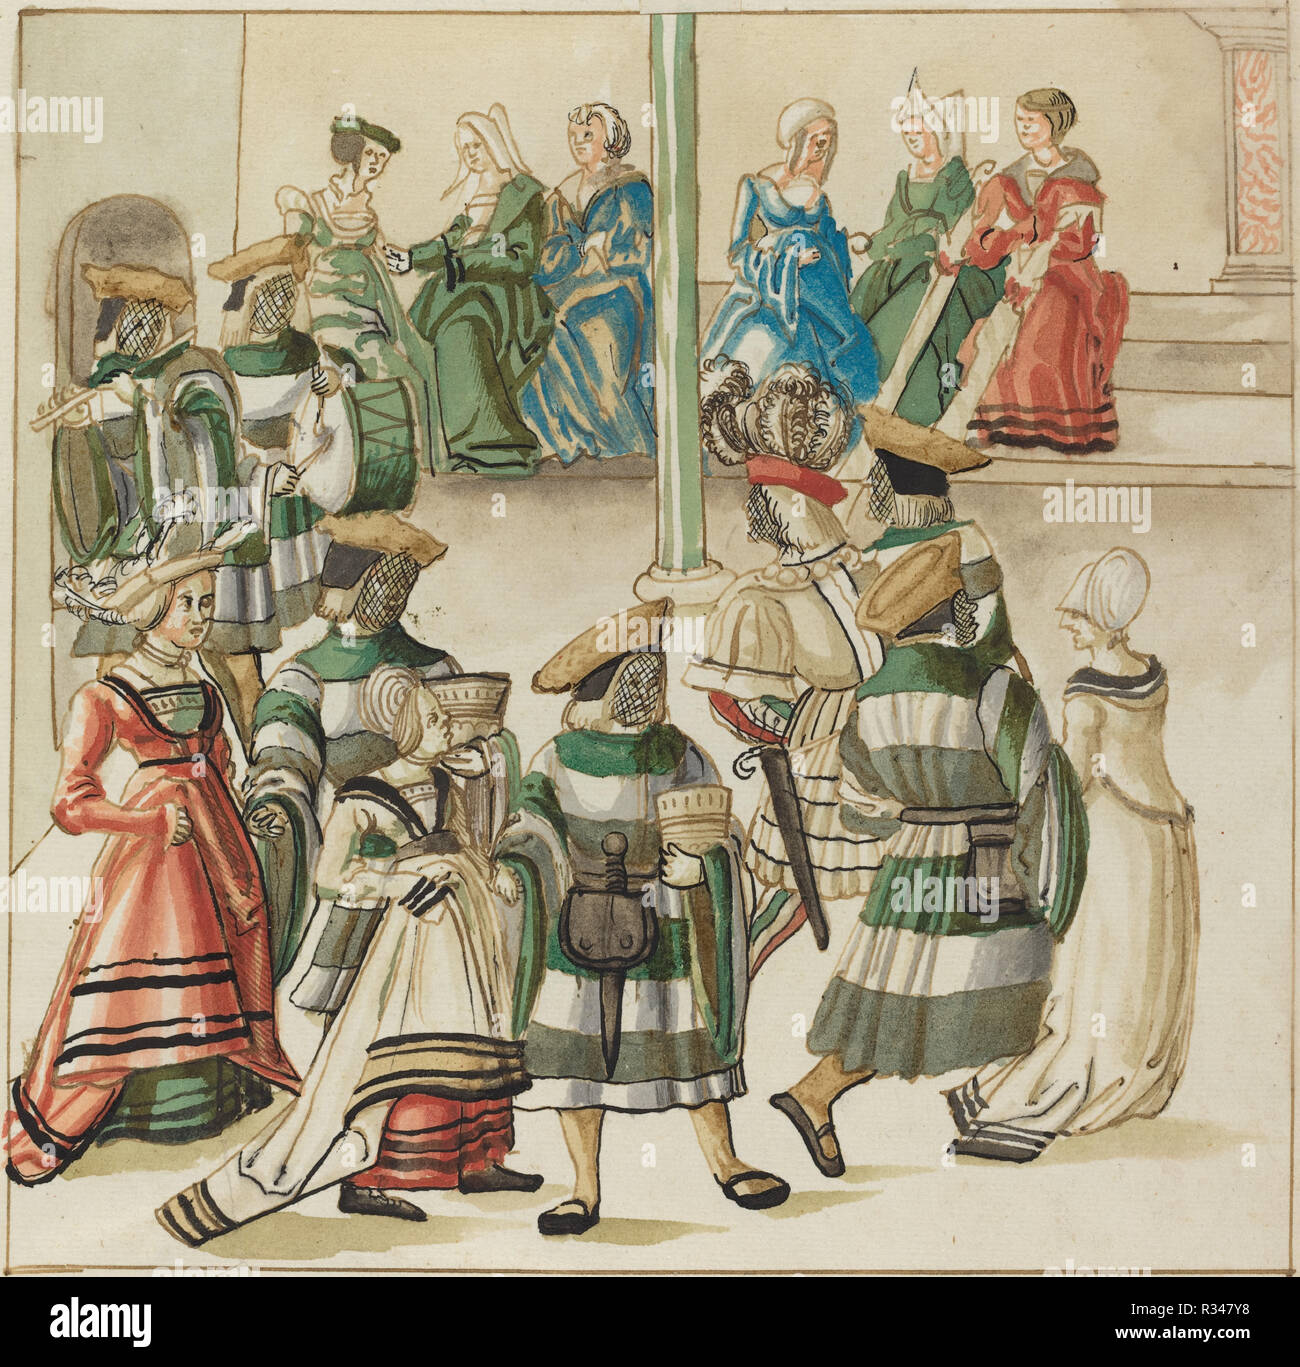 Trois couples de danseurs dirigés par deux chevaliers dans la salle avec la colonne. En date du : ch. 1515. Dimensions : image : 23,3 cm (9 3/16 in.) feuille : 34 x 26,4 cm (13 3/8 x 10 3/8 in.). Médium : plume et encre brune avec l'aquarelle sur papier vergé. Musée : National Gallery of Art, Washington DC. Auteur : GERMAN 16e siècle. Banque D'Images